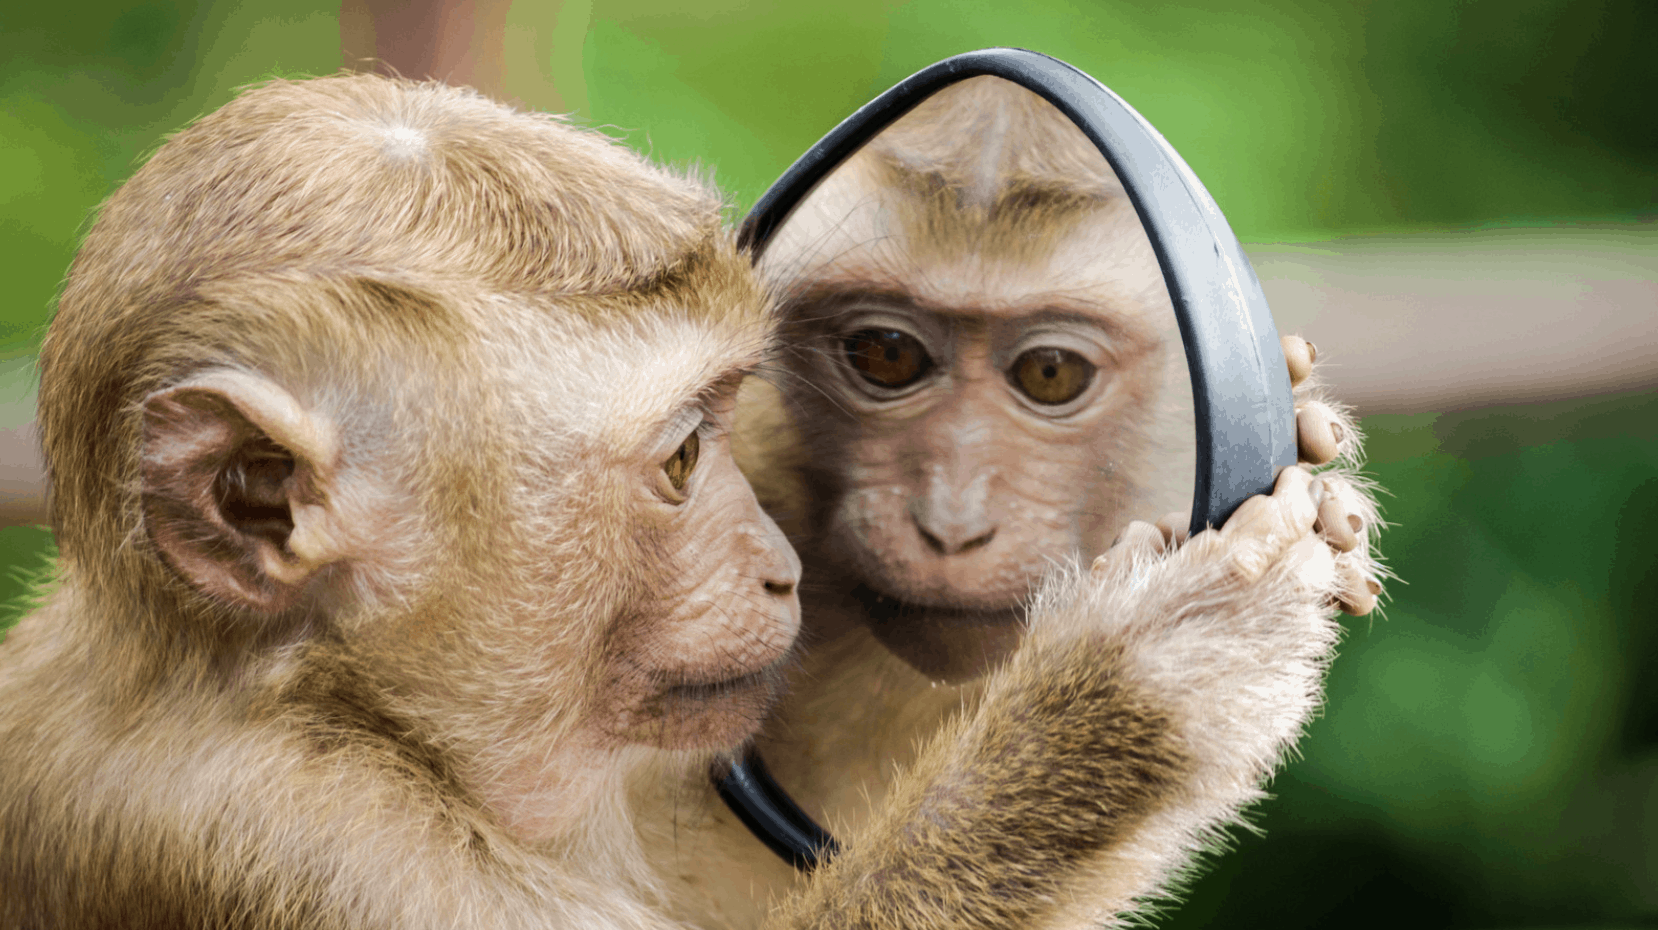 ein Affe sieht in einen Spiegel und erblickt sein Spiegelbild